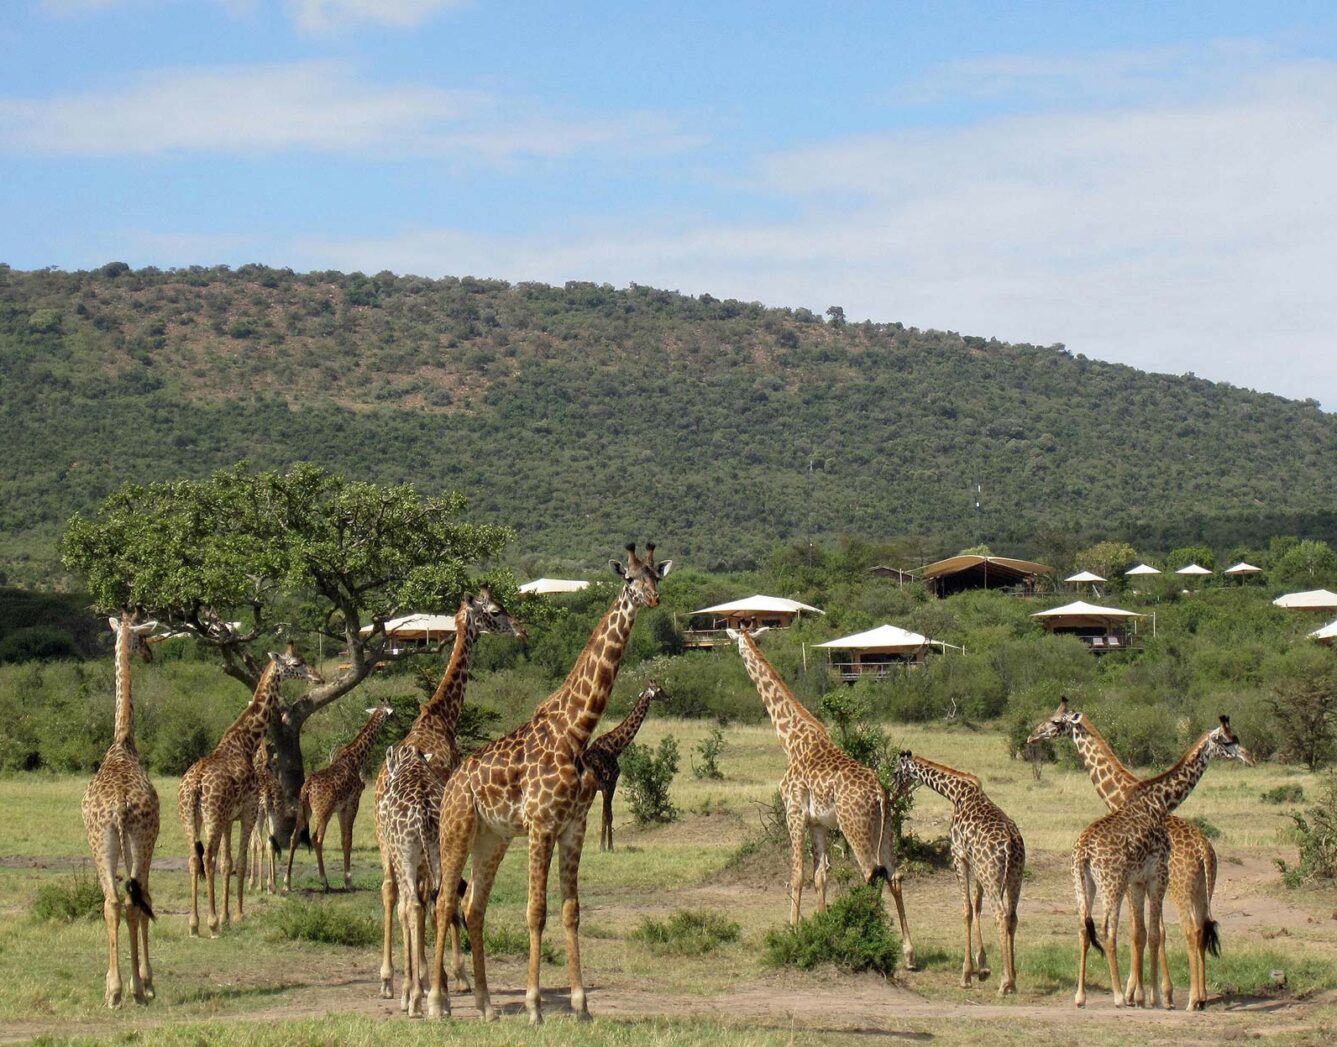 A heard of giraffes in the grass